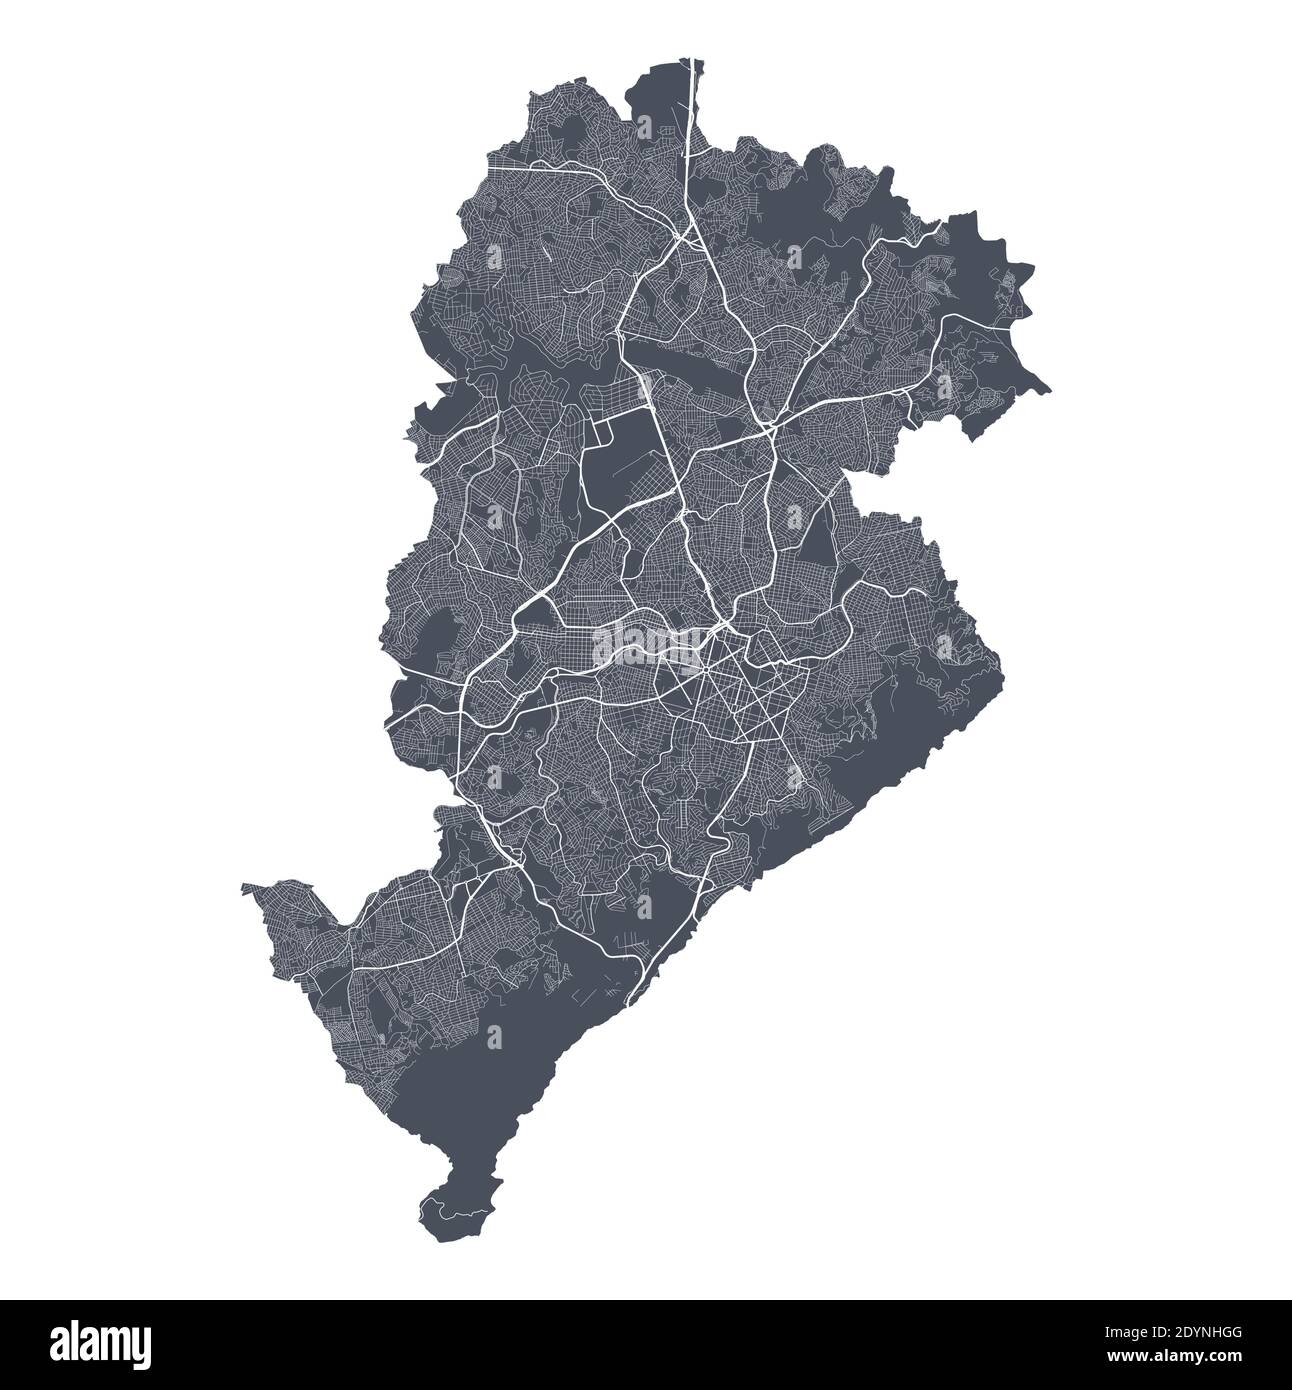 Mappa di Belo Horizonte. Mappa vettoriale dettagliata dell'area amministrativa della città di Belo Horizonte. Poster del paesaggio urbano vista aria metropolitana. Terra scura con stre bianco Illustrazione Vettoriale